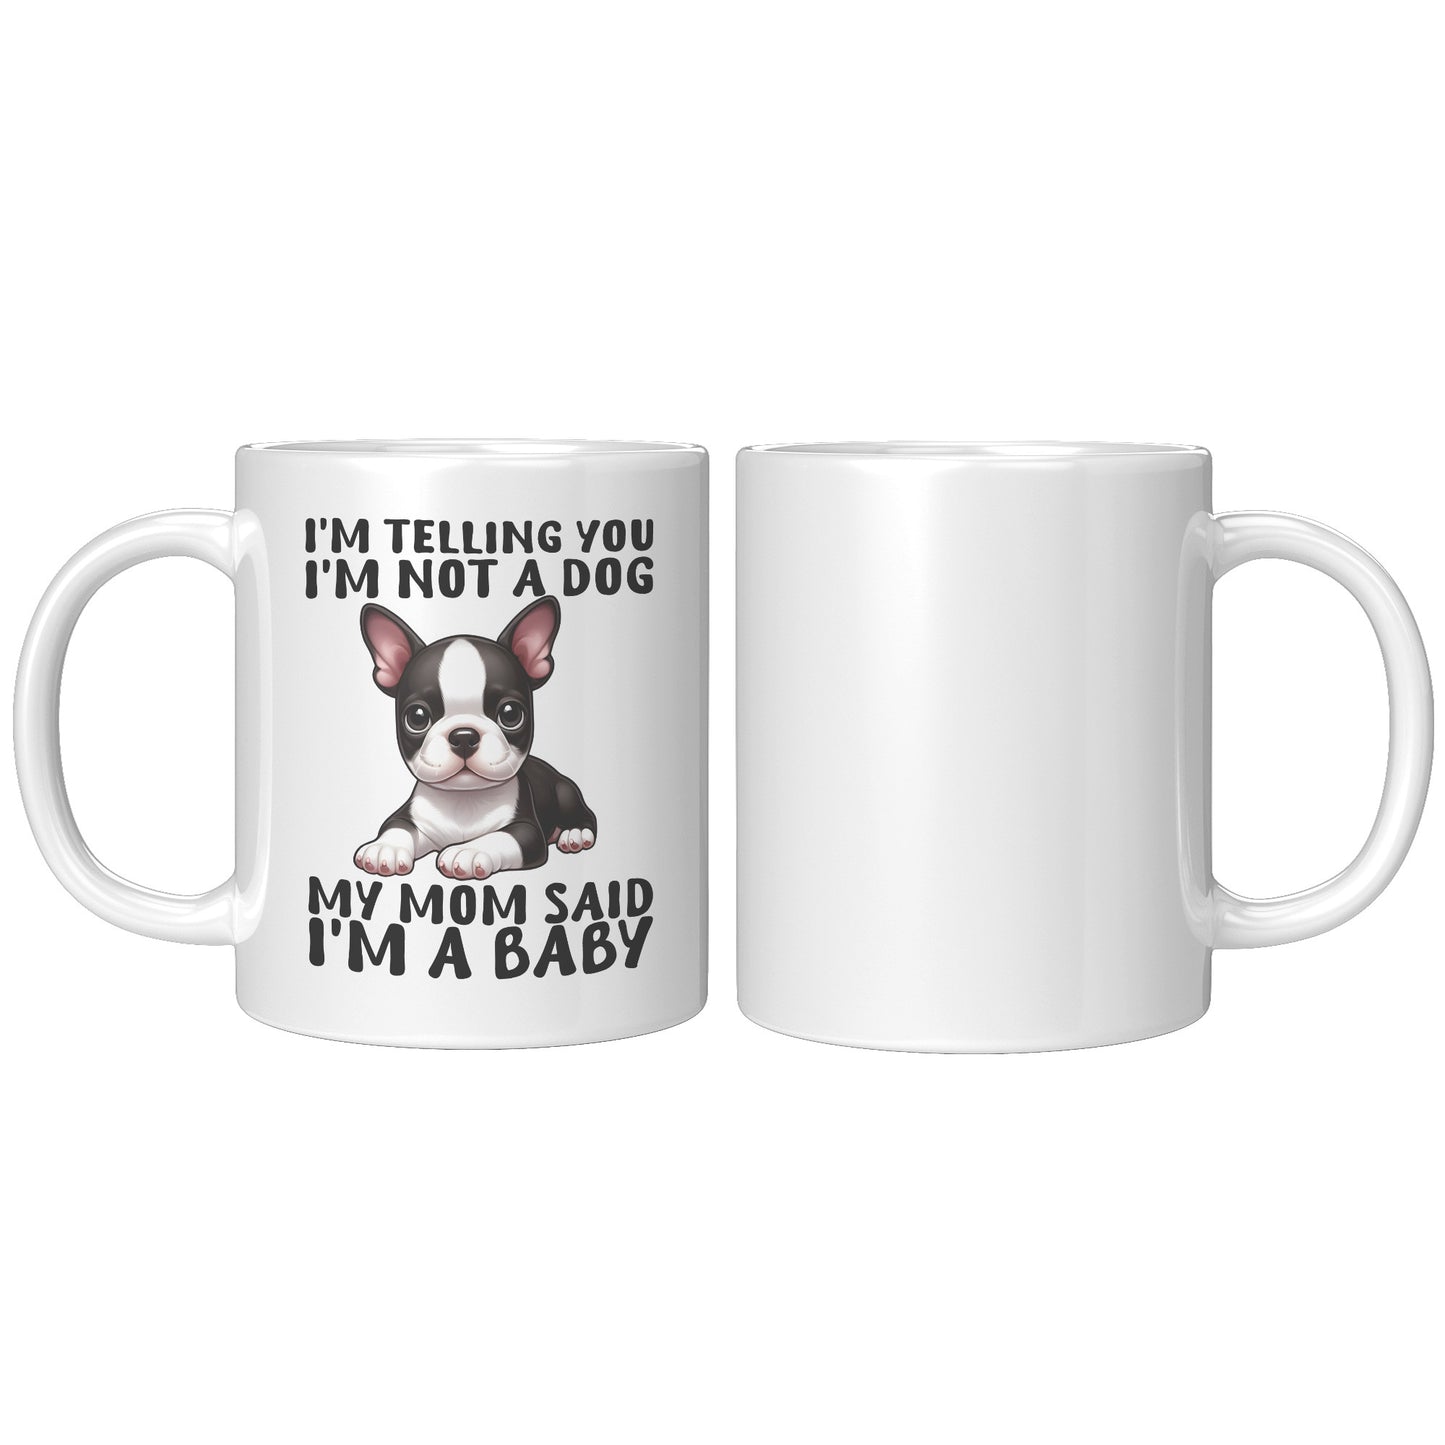 Dumbo-Mug for Boston Terrier lovers